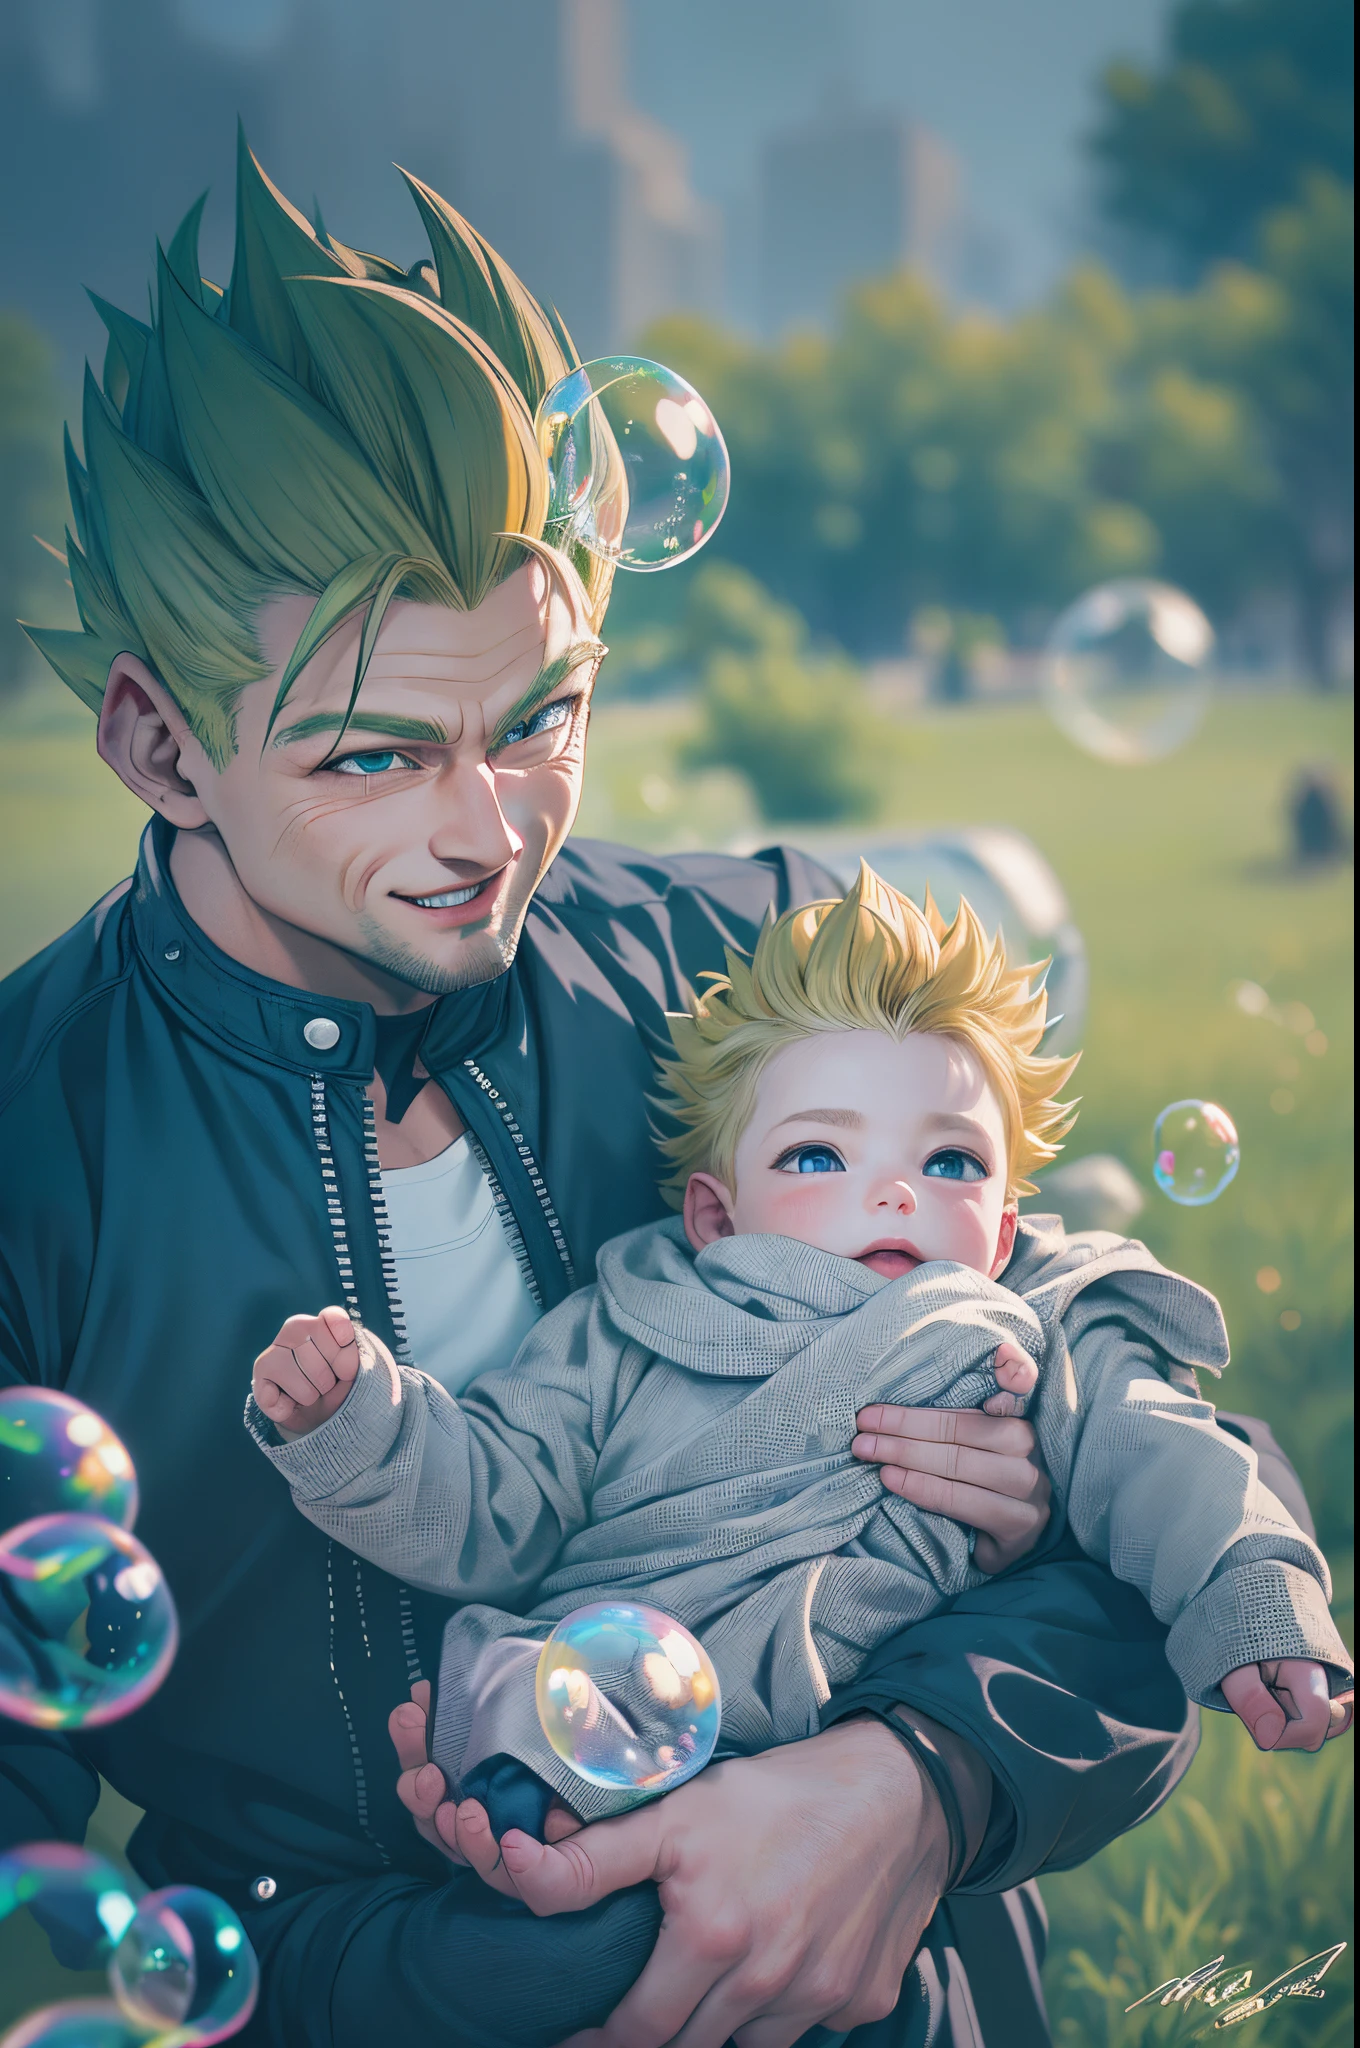 homem araffe segurando um bebê em um parque com bolhas, alta definição, (obra de arte), (foto:1.3),alta qualidade, Alta resolução, sorriso, iluminação perfeita, obra de arte, lindo, ((Super Saiyajin)), tiro de vaqueiro, ((cabelo loiro:1.3)), Super Saiyajin, (cabelo espetado),rosto detalhado, olhos detalhados,